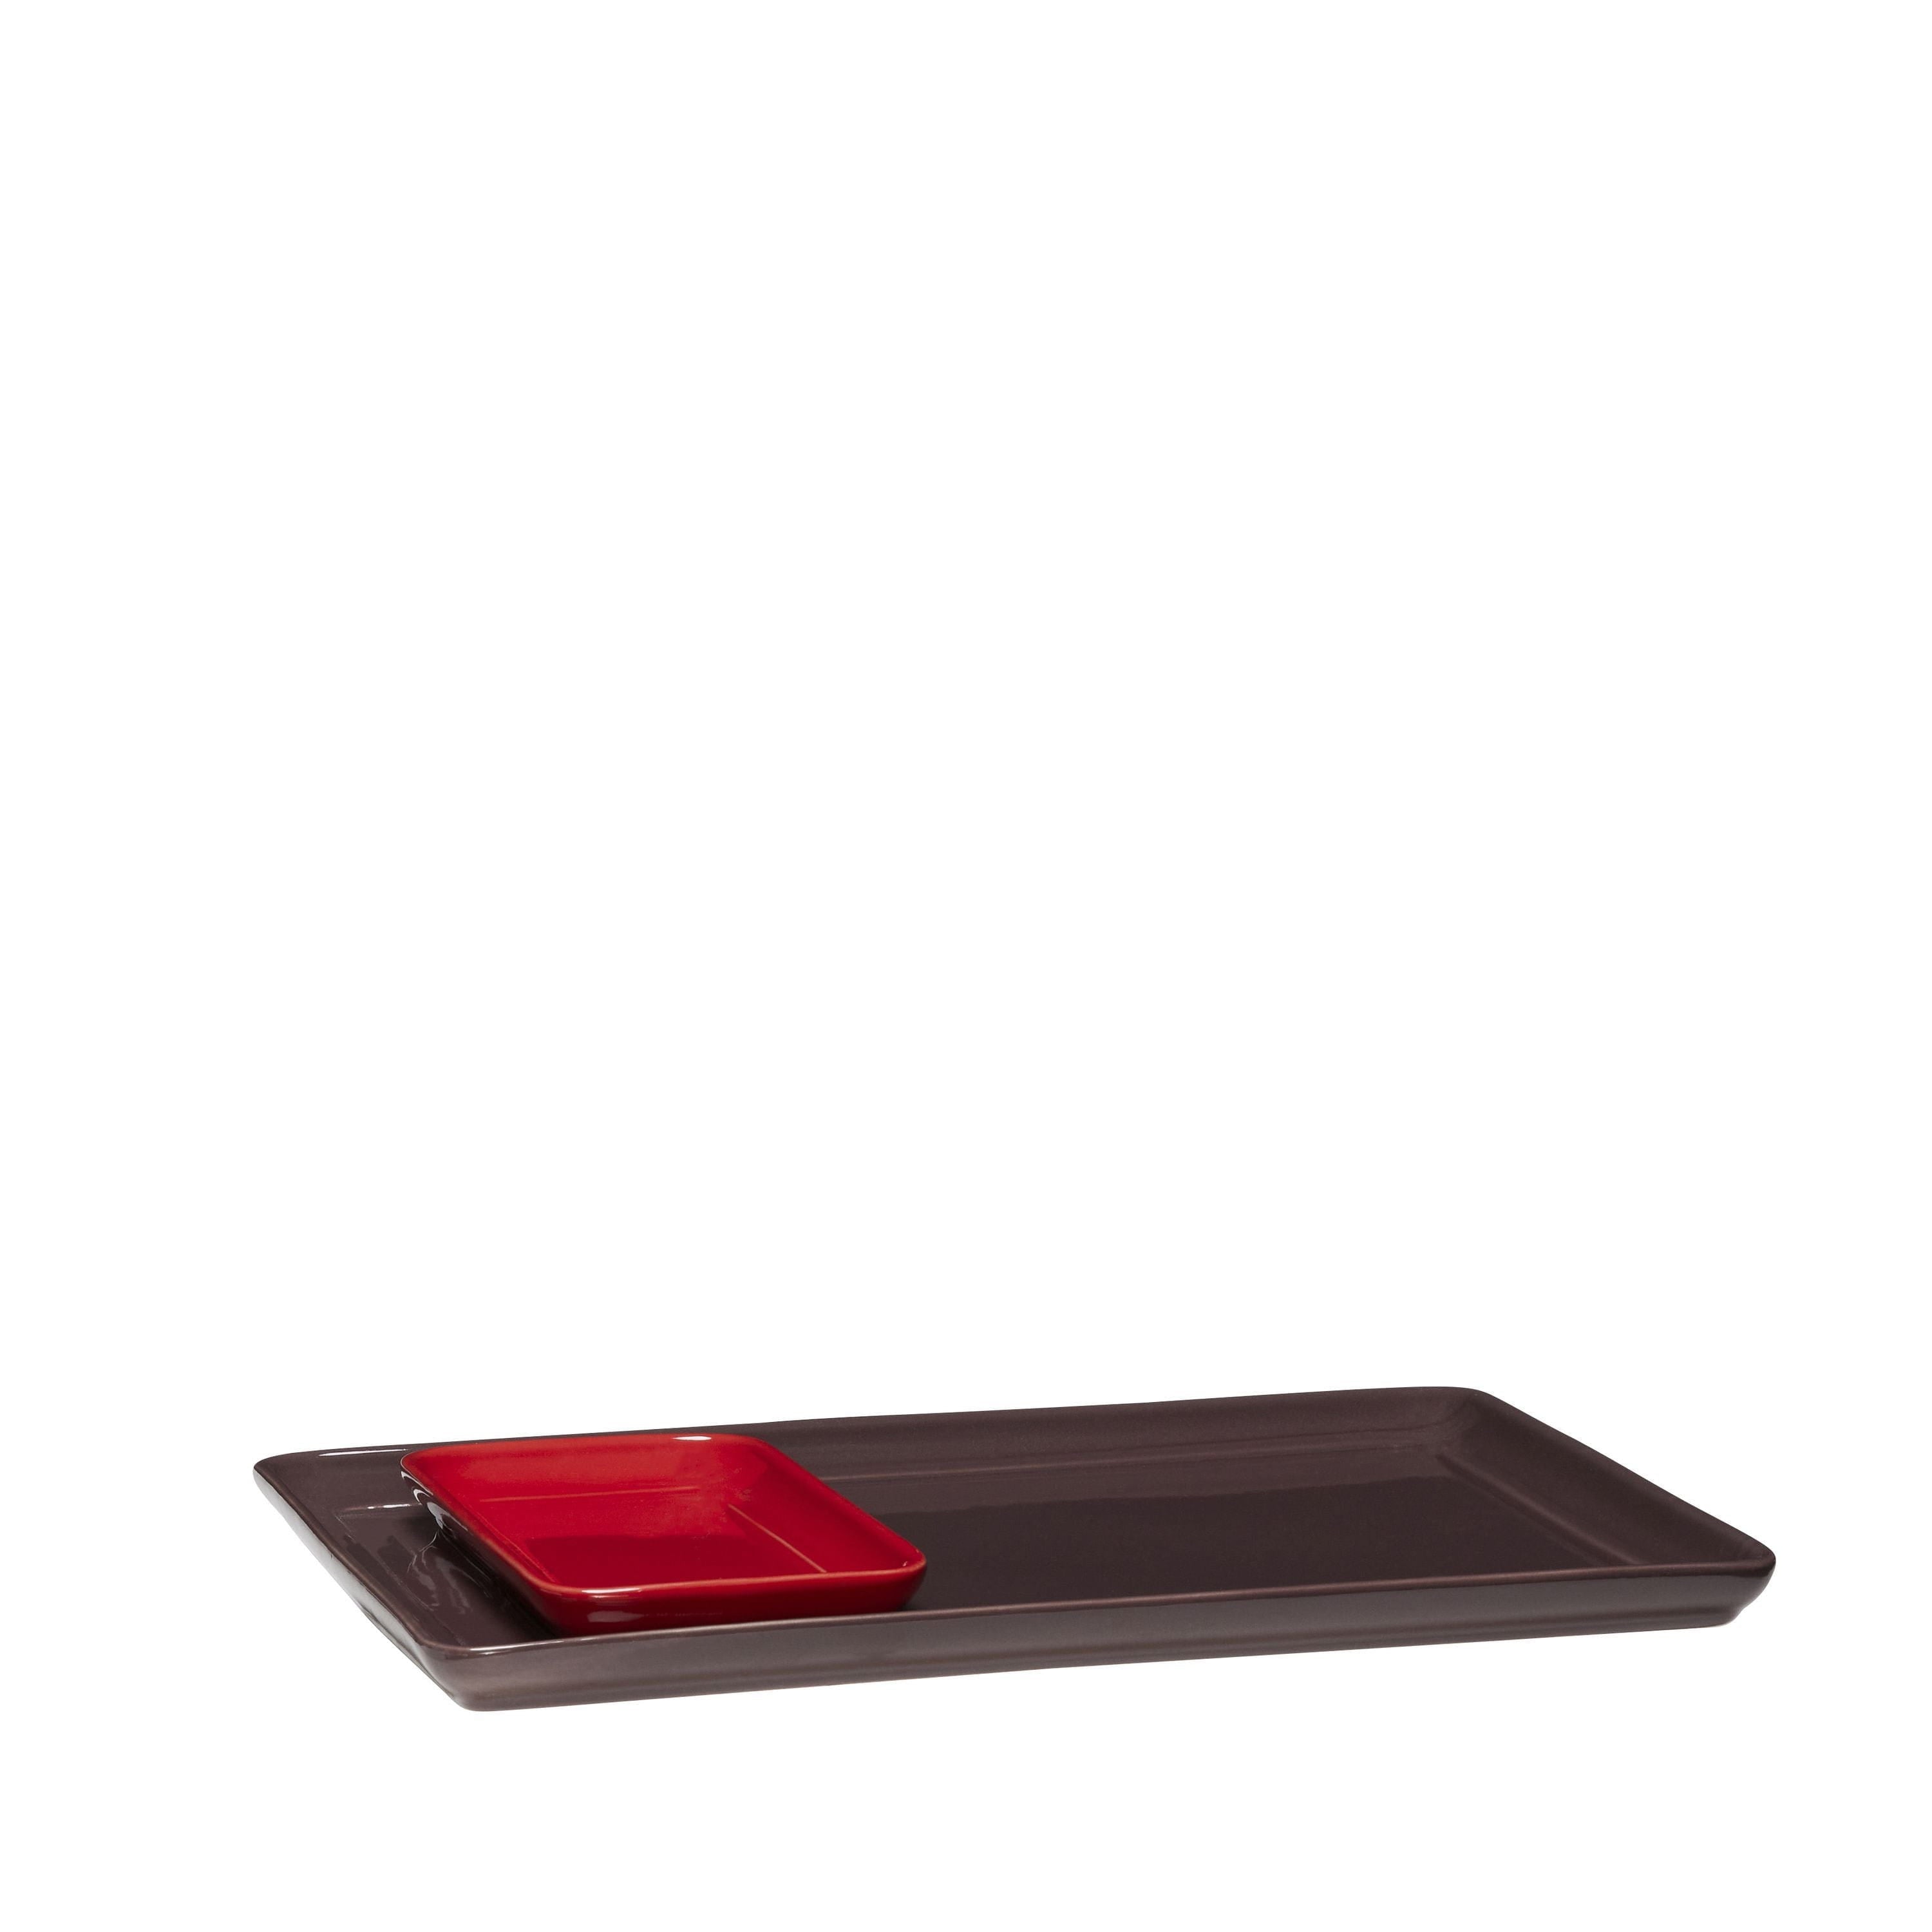 Hübsch Amare Tablett 2er-Set, Burgund/Rot